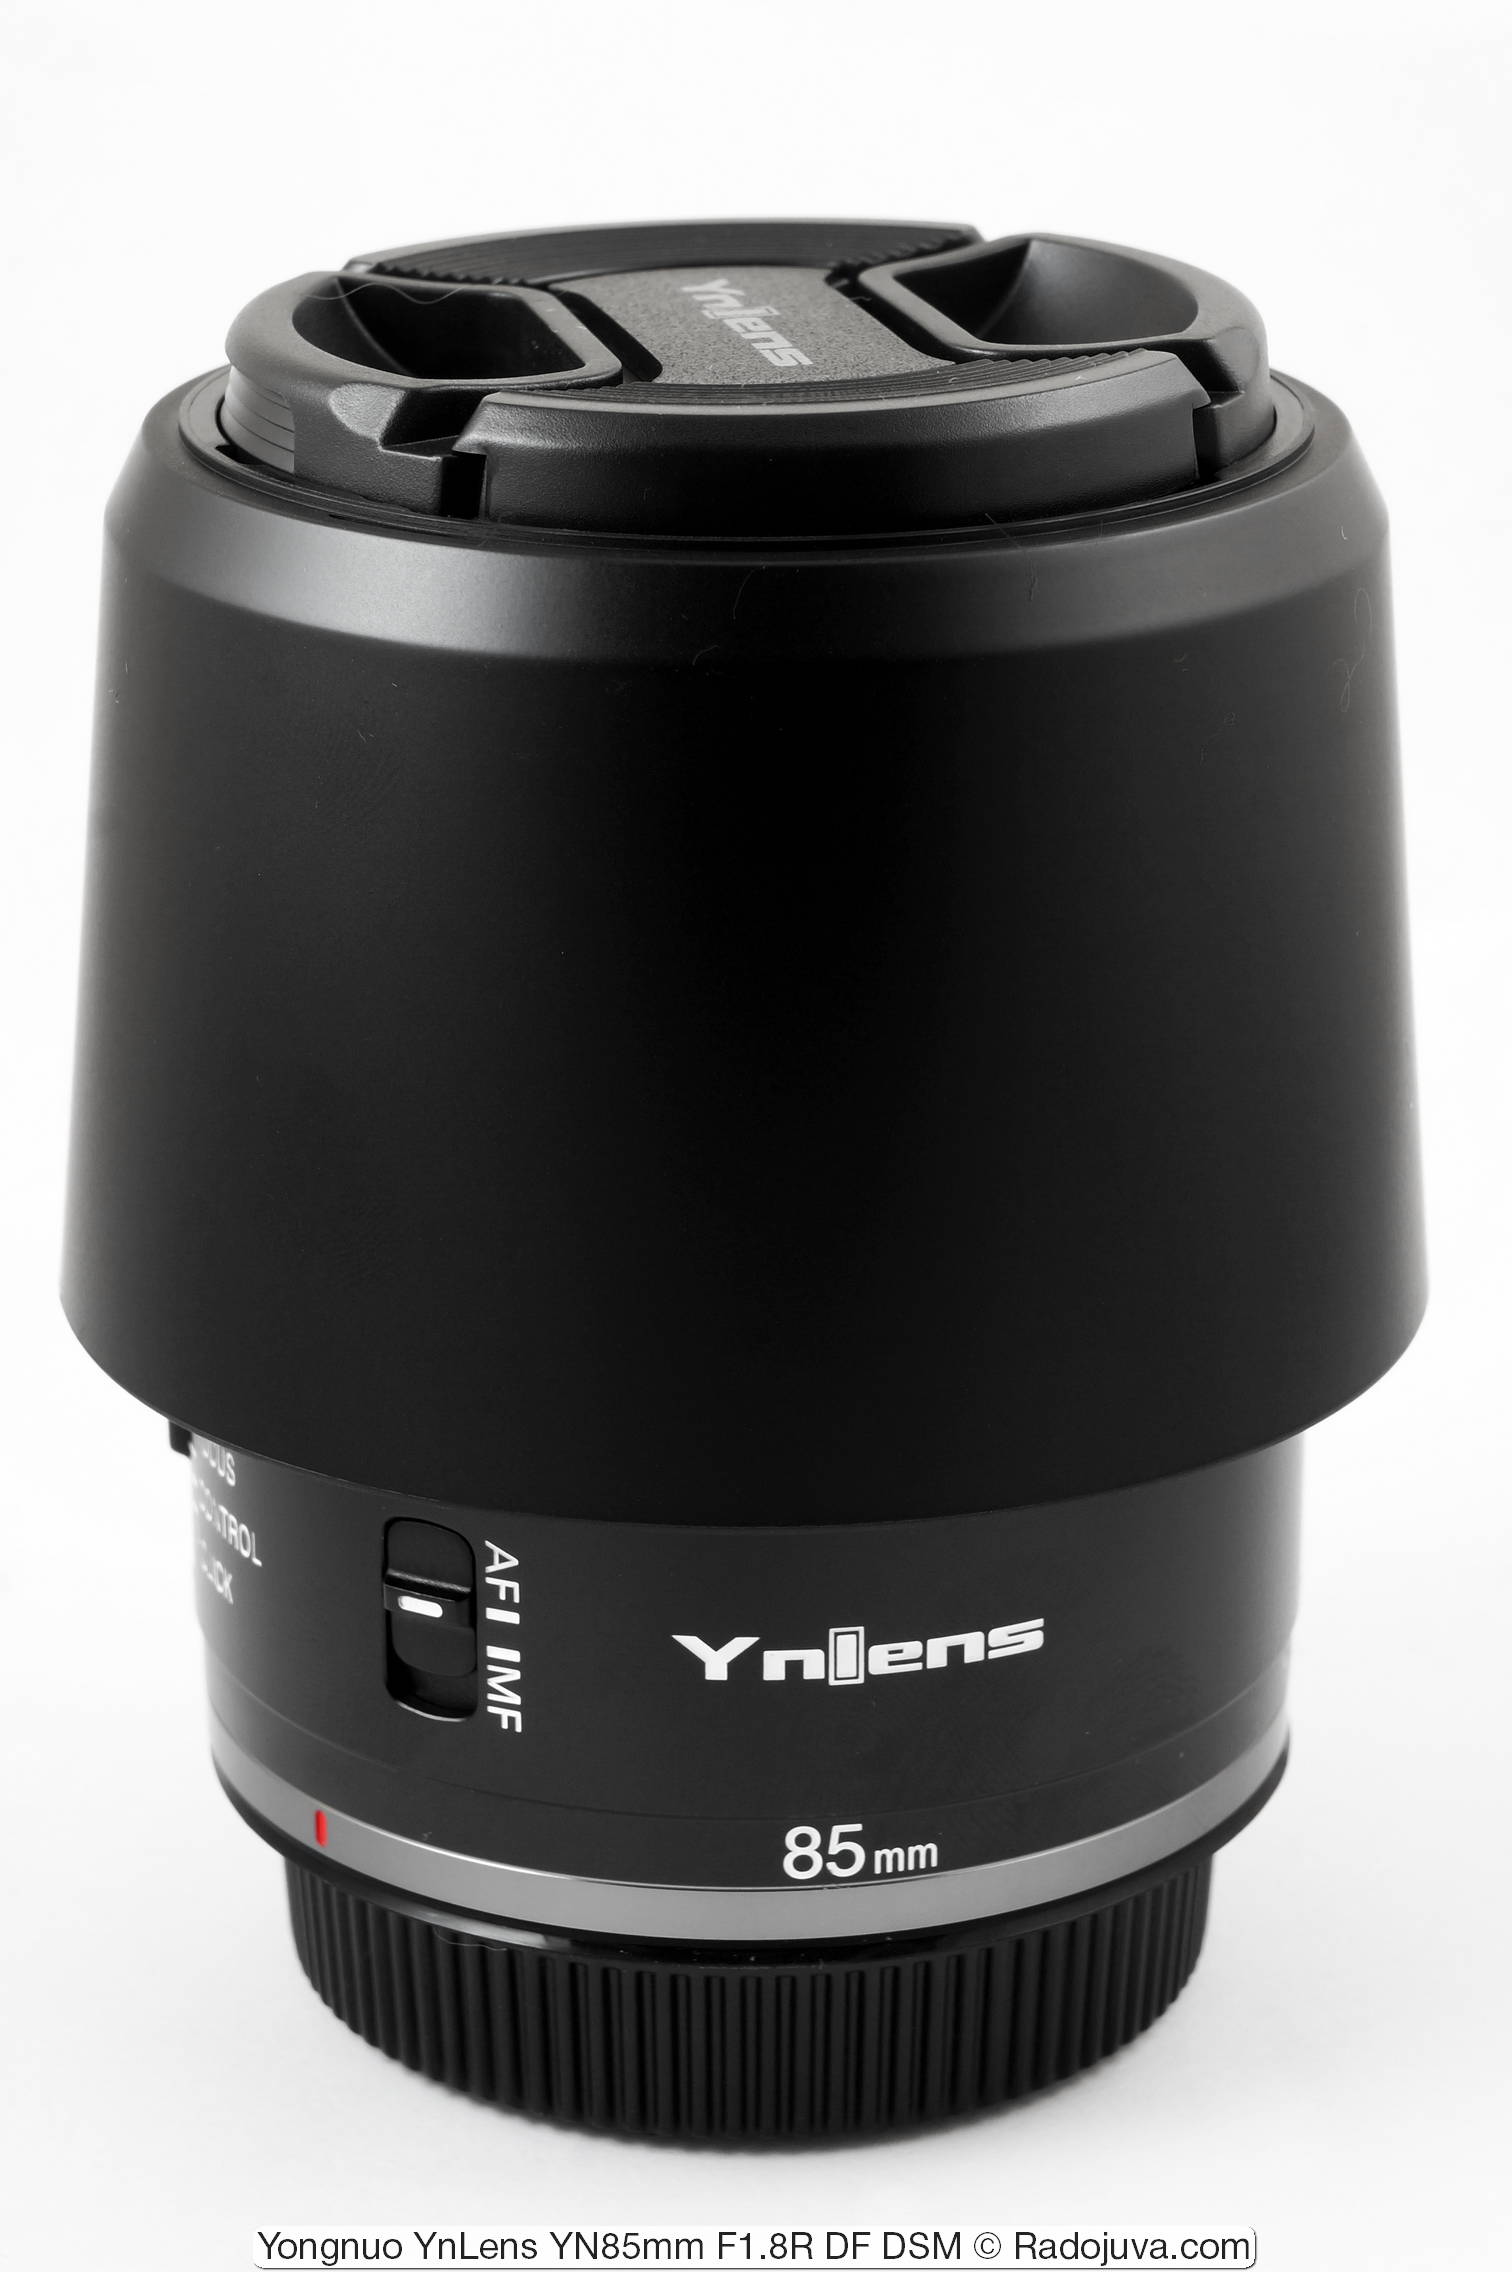 Yongnuo YnLens YN85mm F1.8R DF DSM (voor Canon RF)